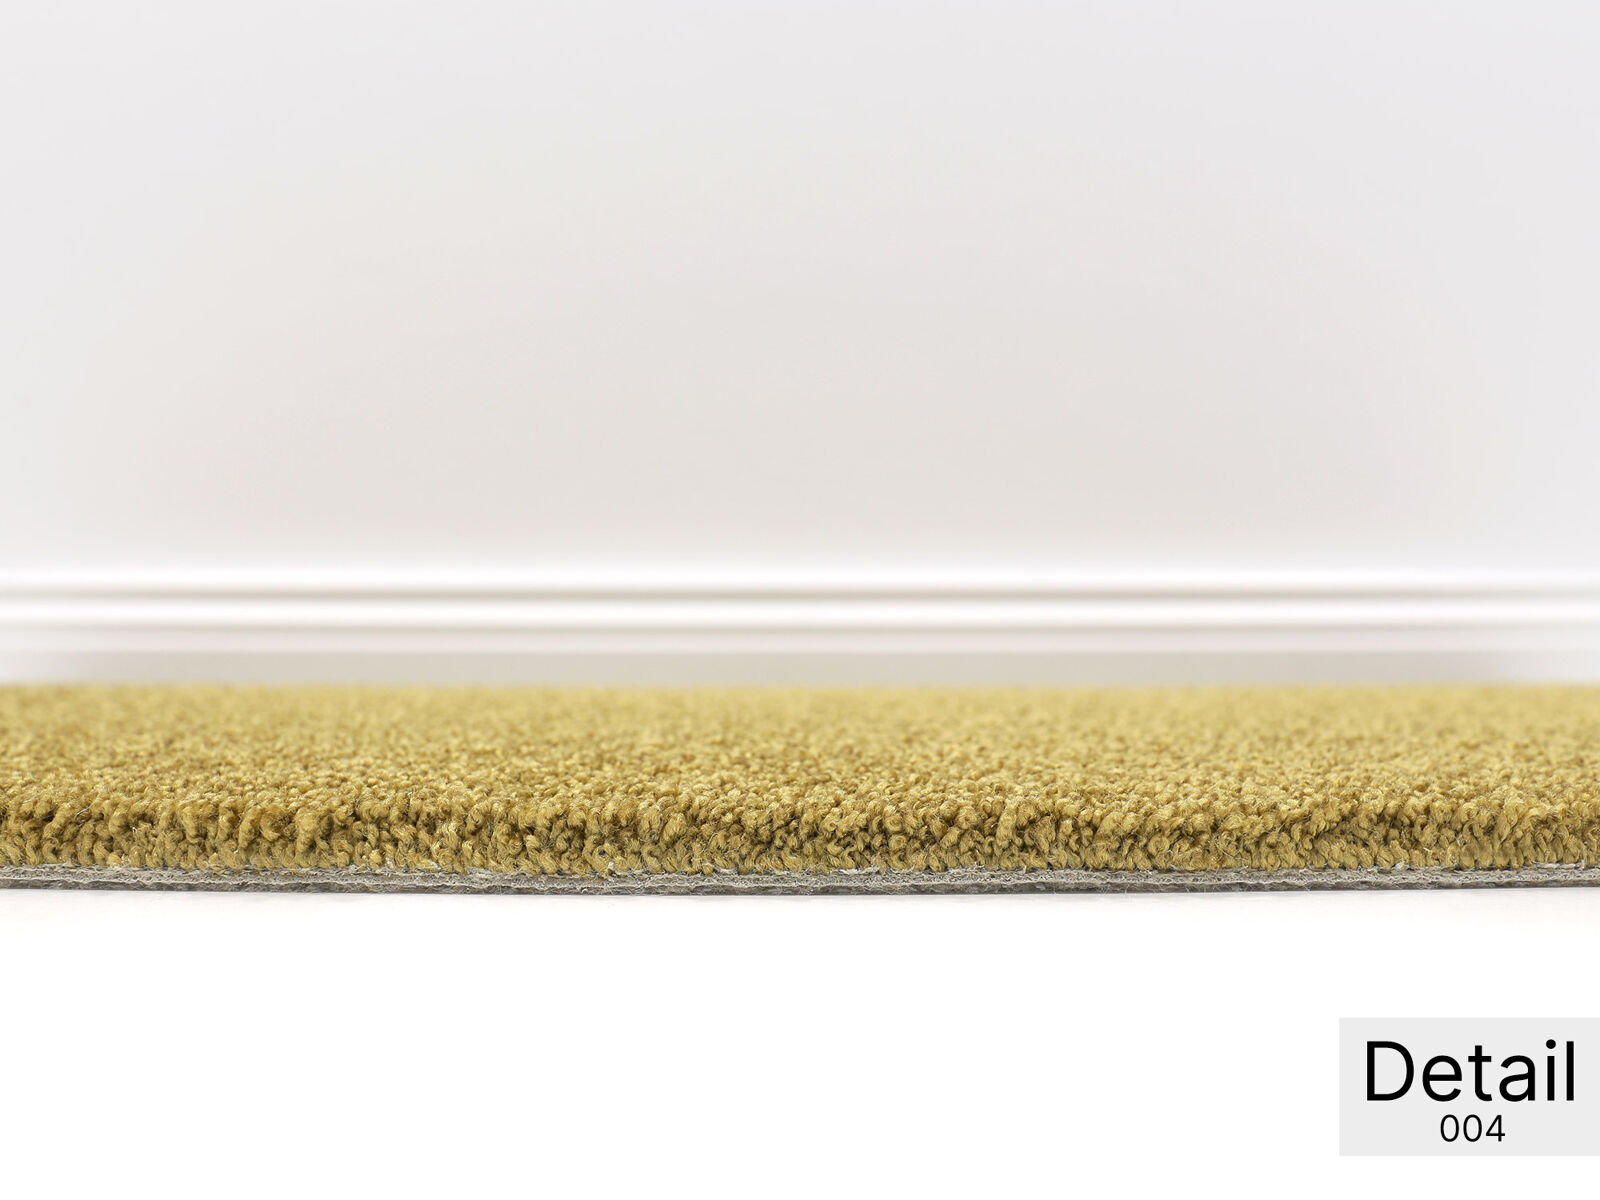 Miron Teppichboden | Softflor | Glanzeffekt | 400 & 500cm Breite